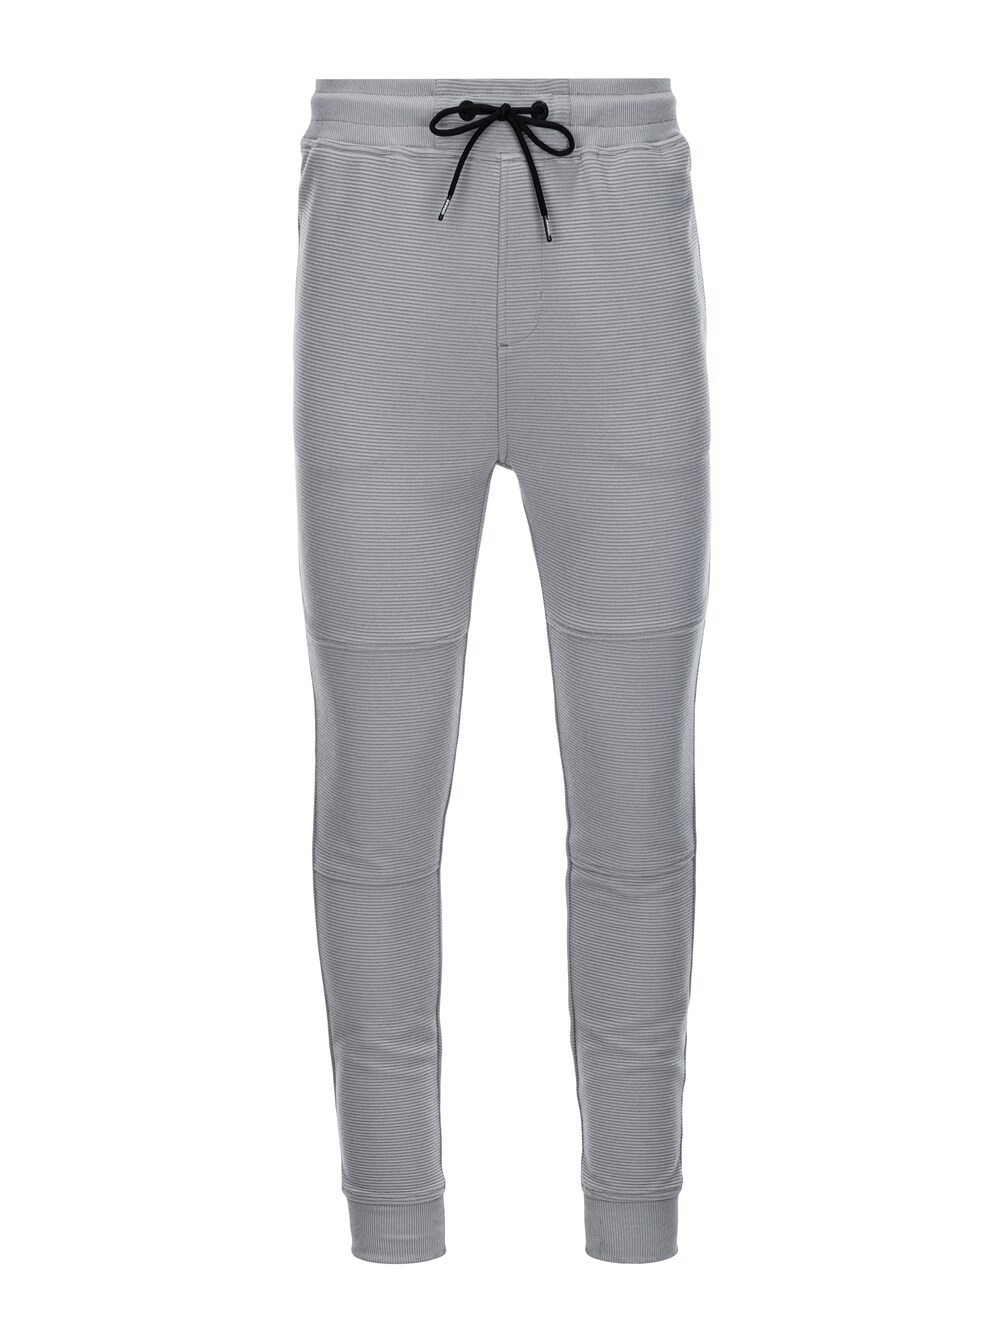 Зауженные брюки Ombre PASK-0129, серый